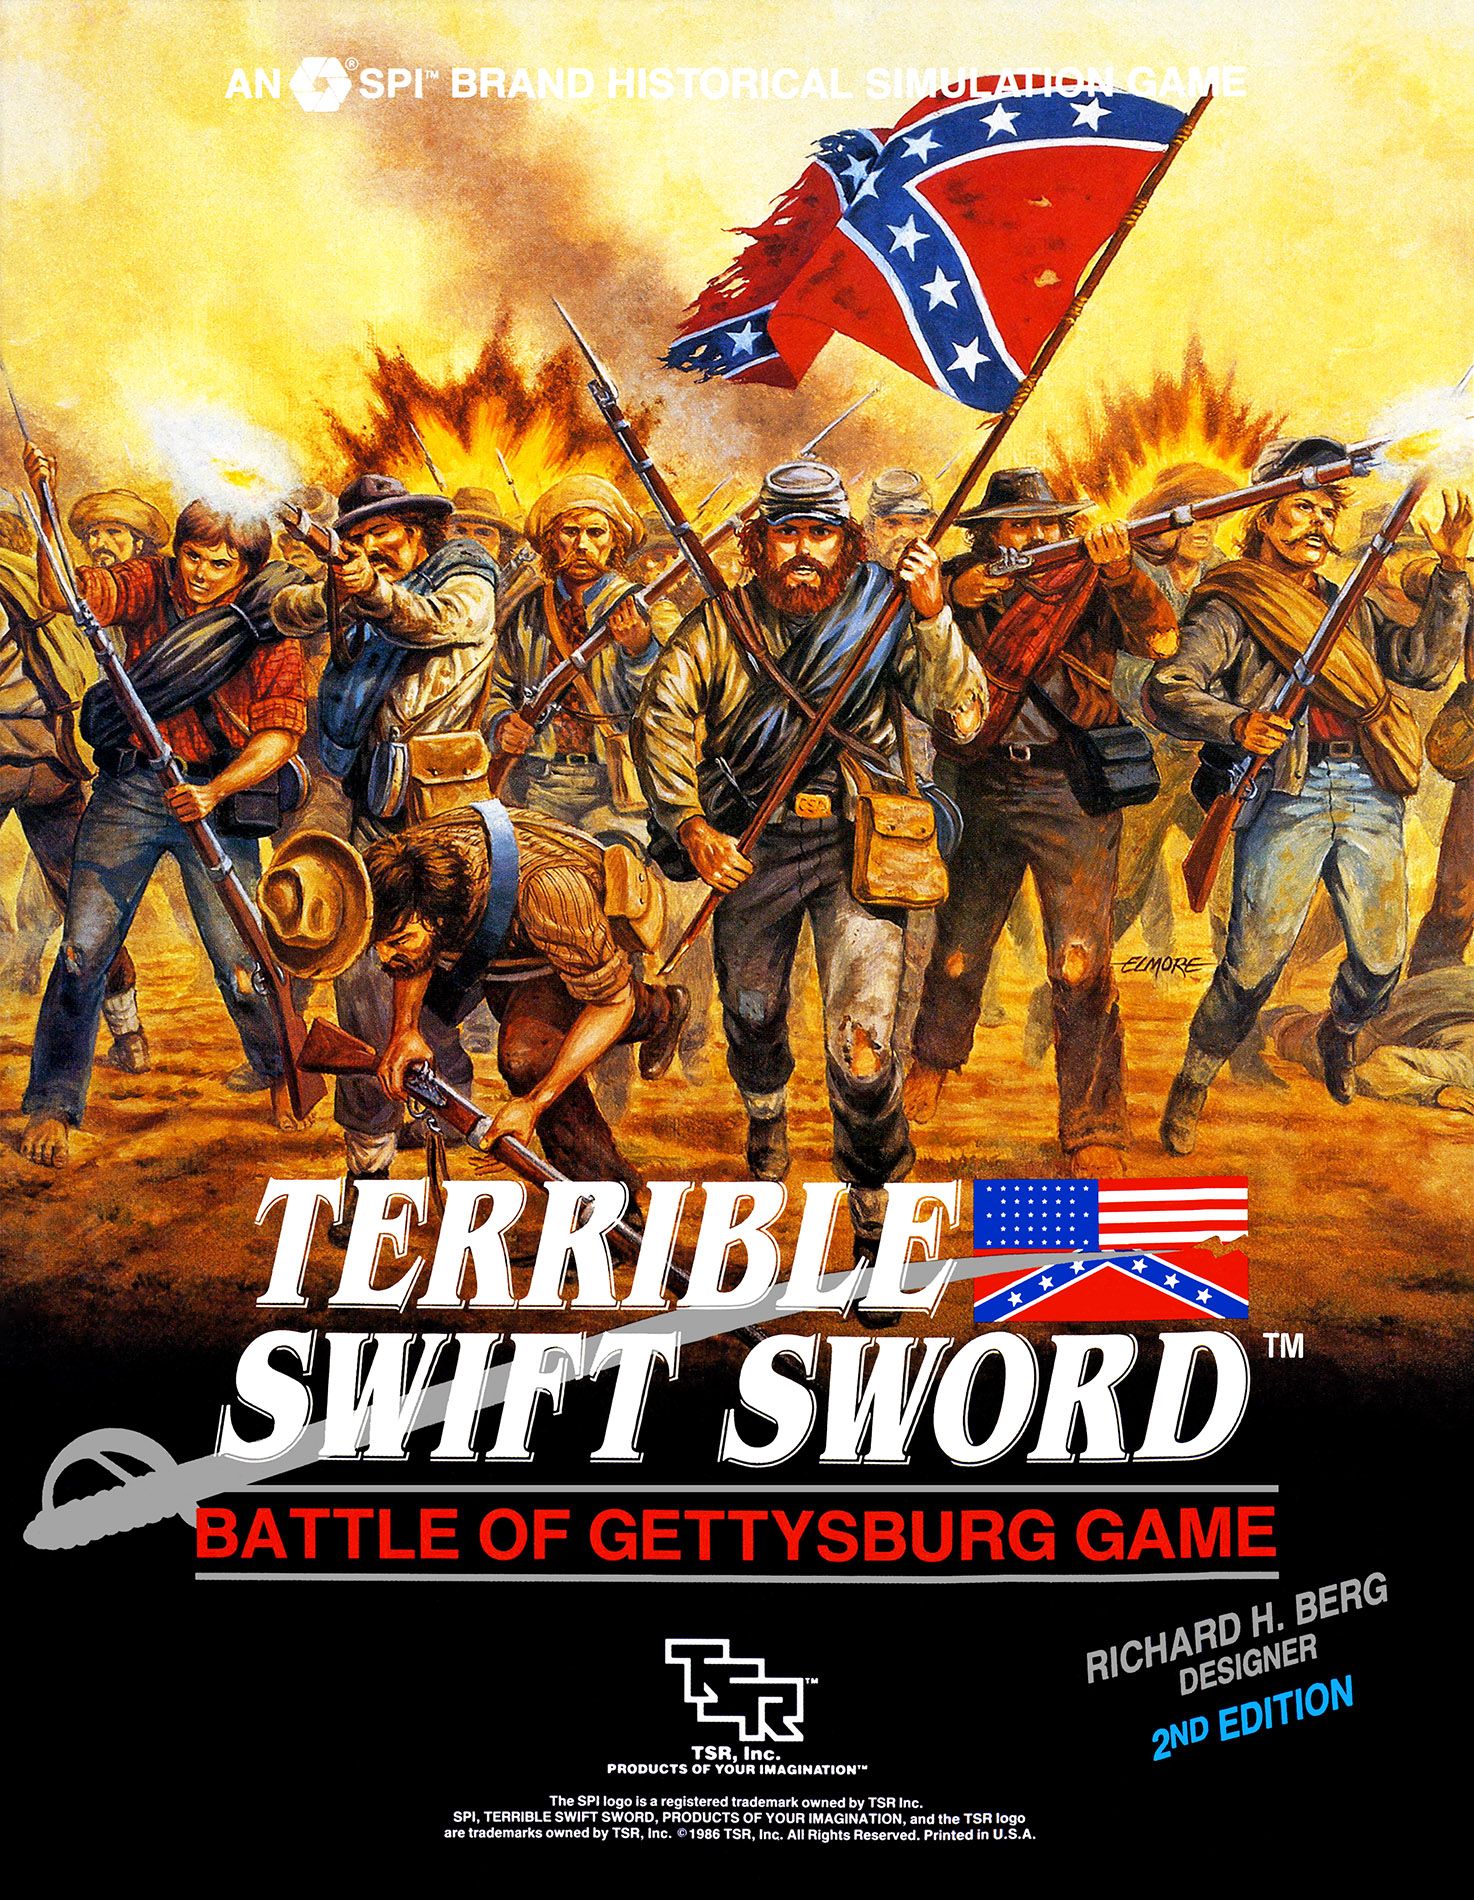 Terrible Swift Sword: Battle of Gettysburg Game